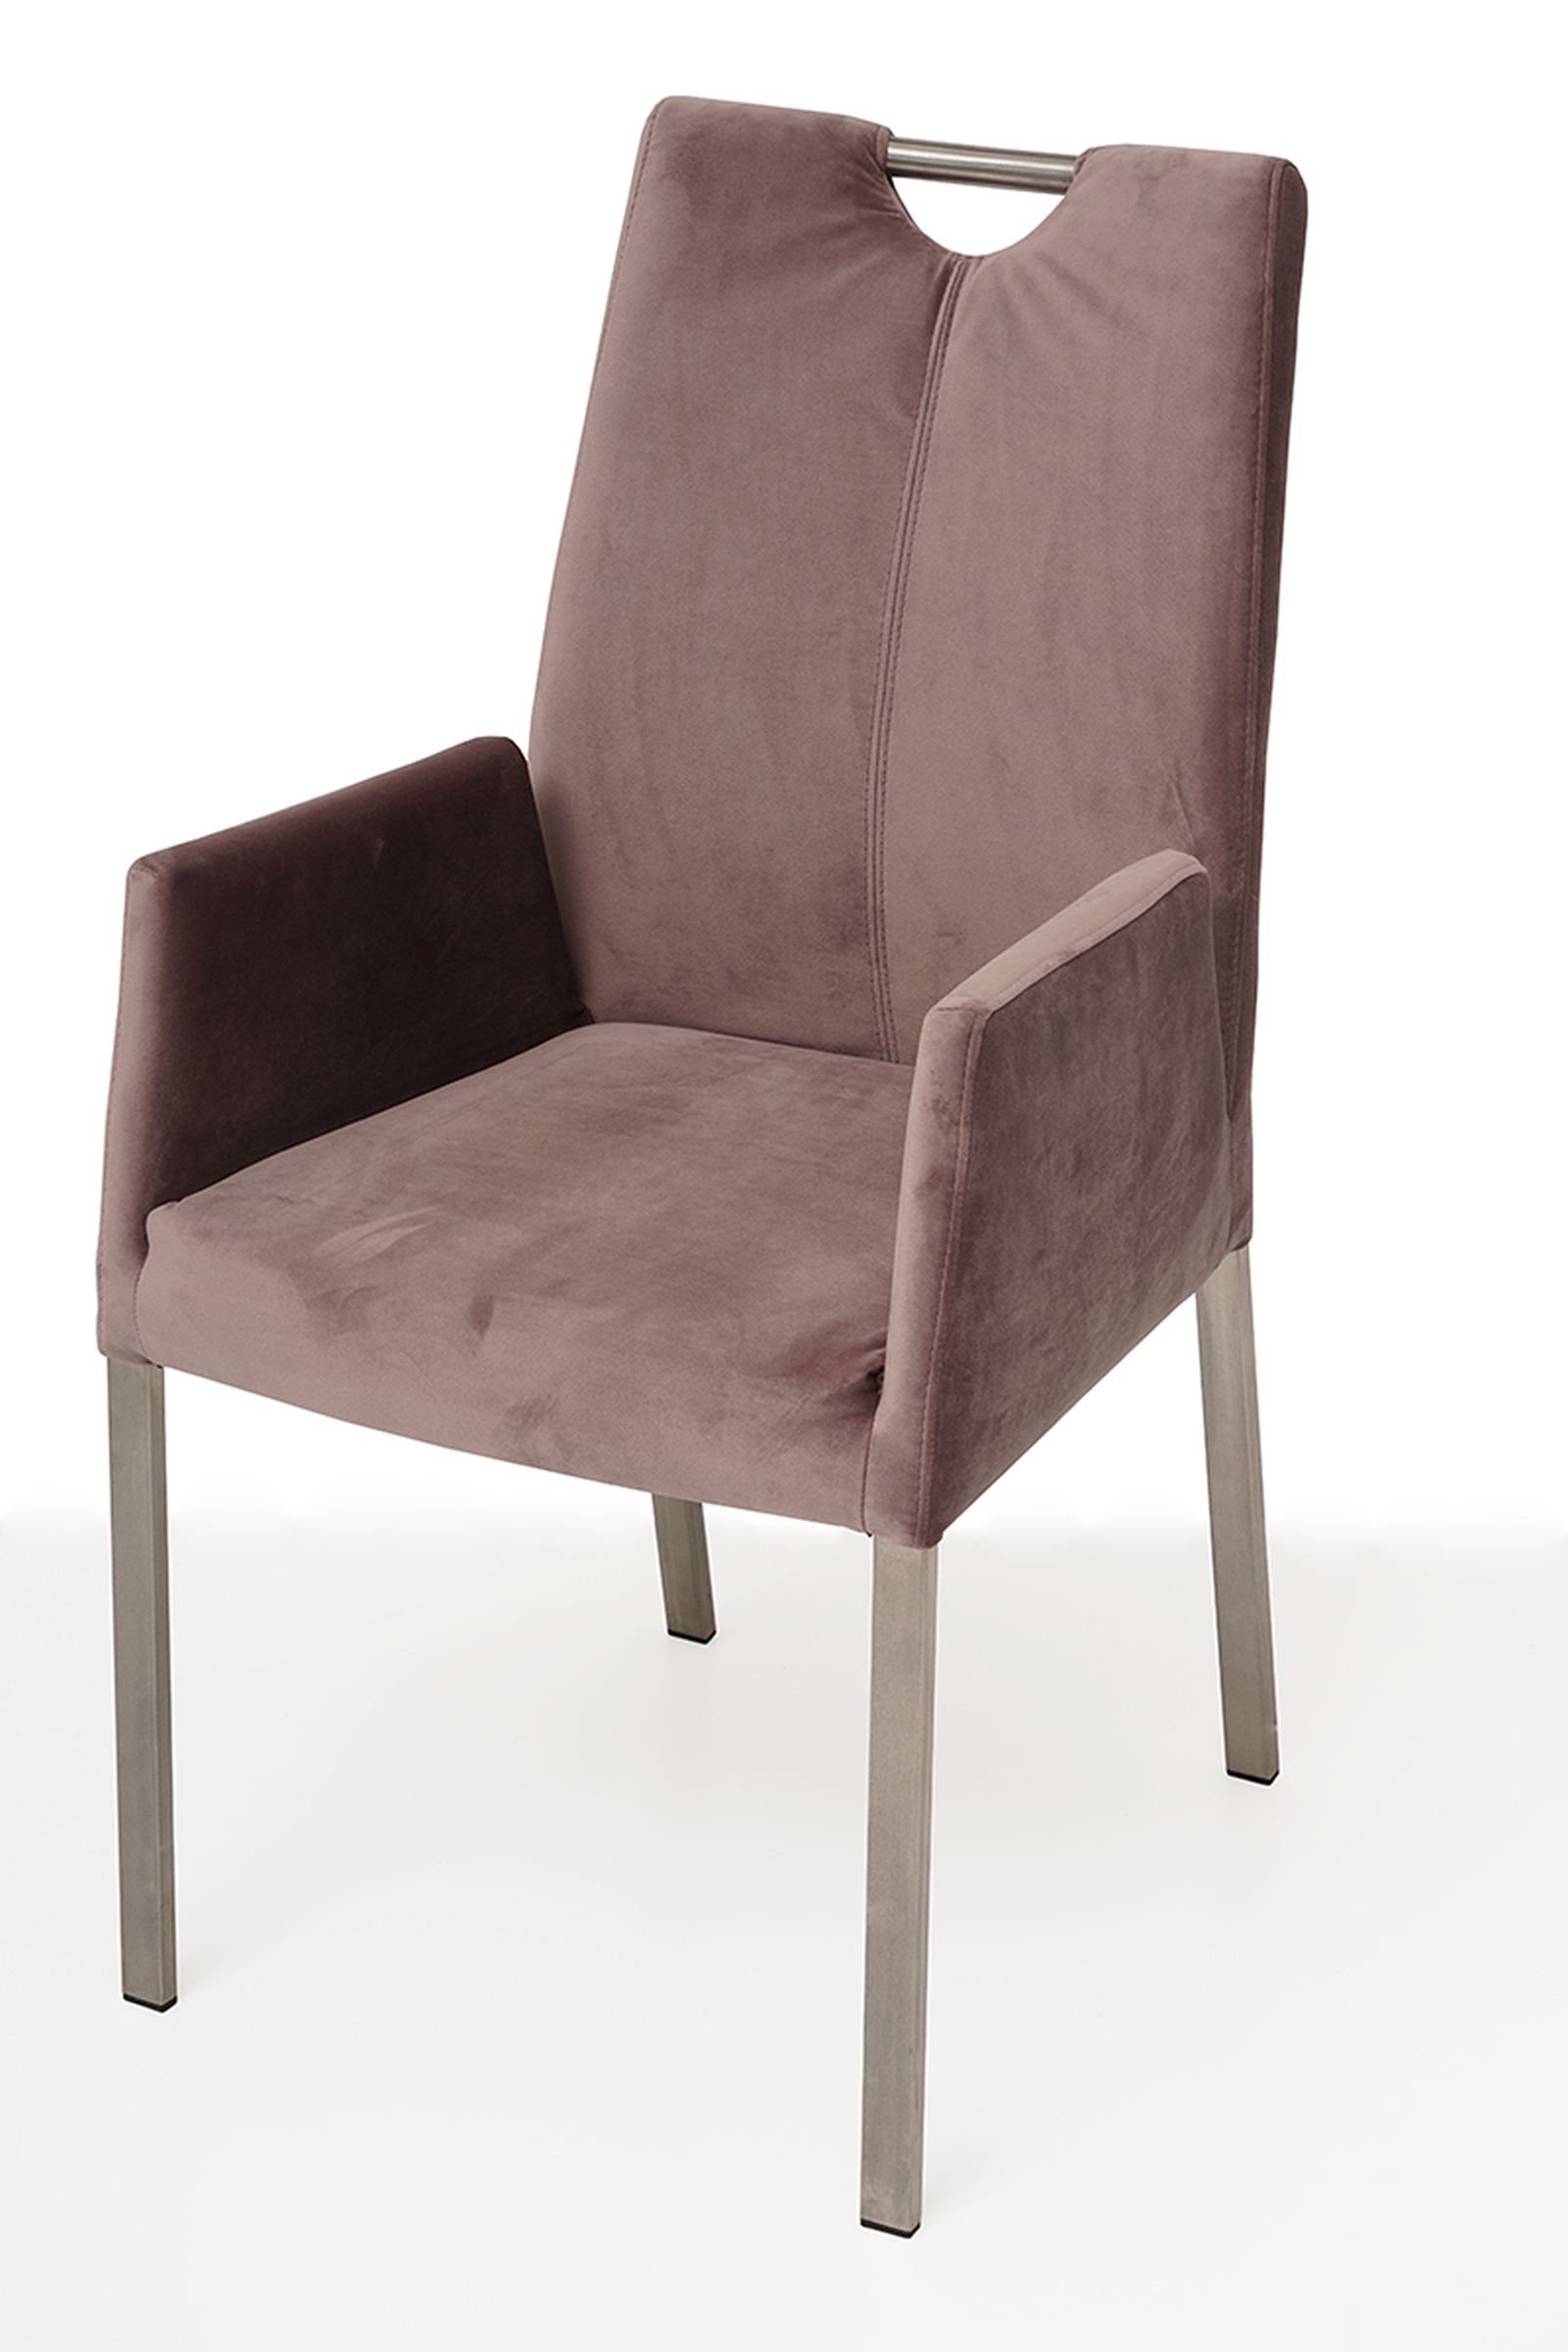 Nowoczesne krzesło tapicerowane na metalowych nogach z pdłokietnikami 1